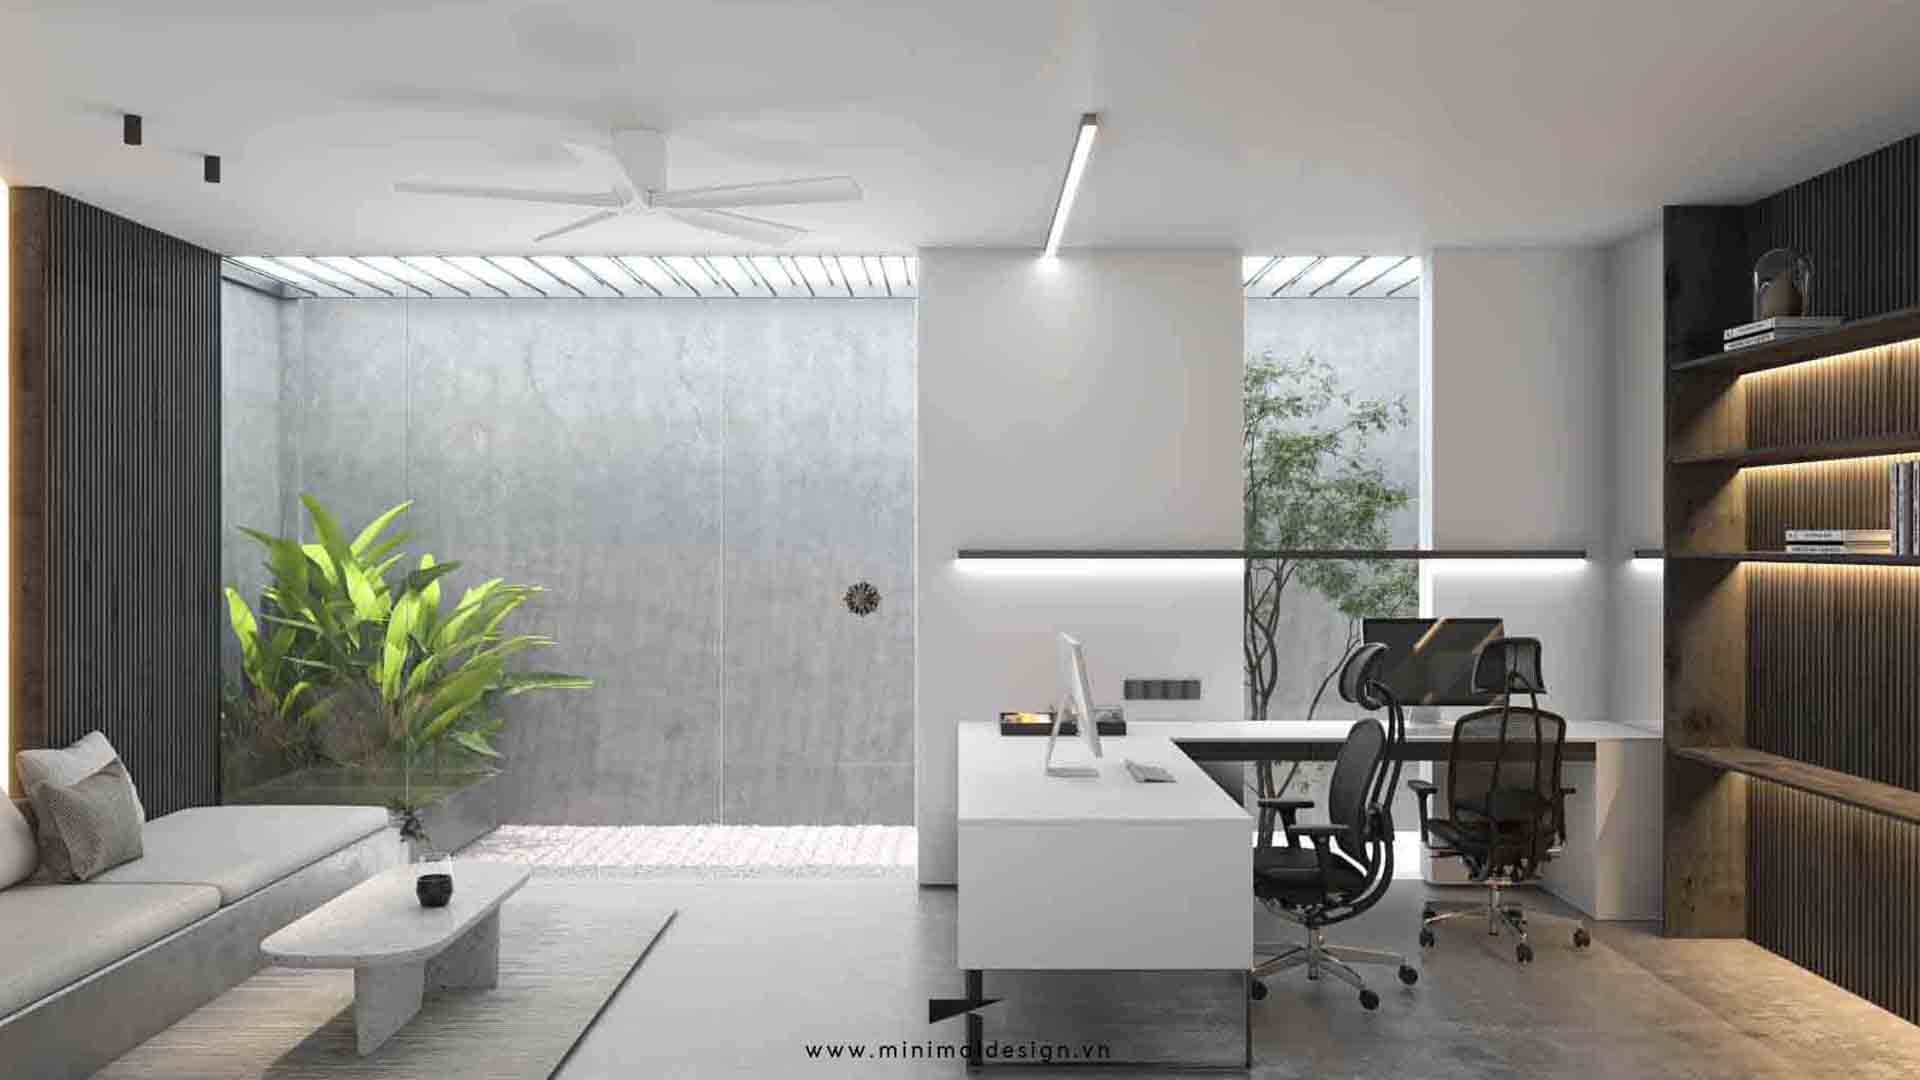 Phong cách thiết kế nội thất tối giản không còn xa lạ trong các loại hình từ nhà phố, căn hộ, biệt thự đến mô hình kinh doanh văn phòng